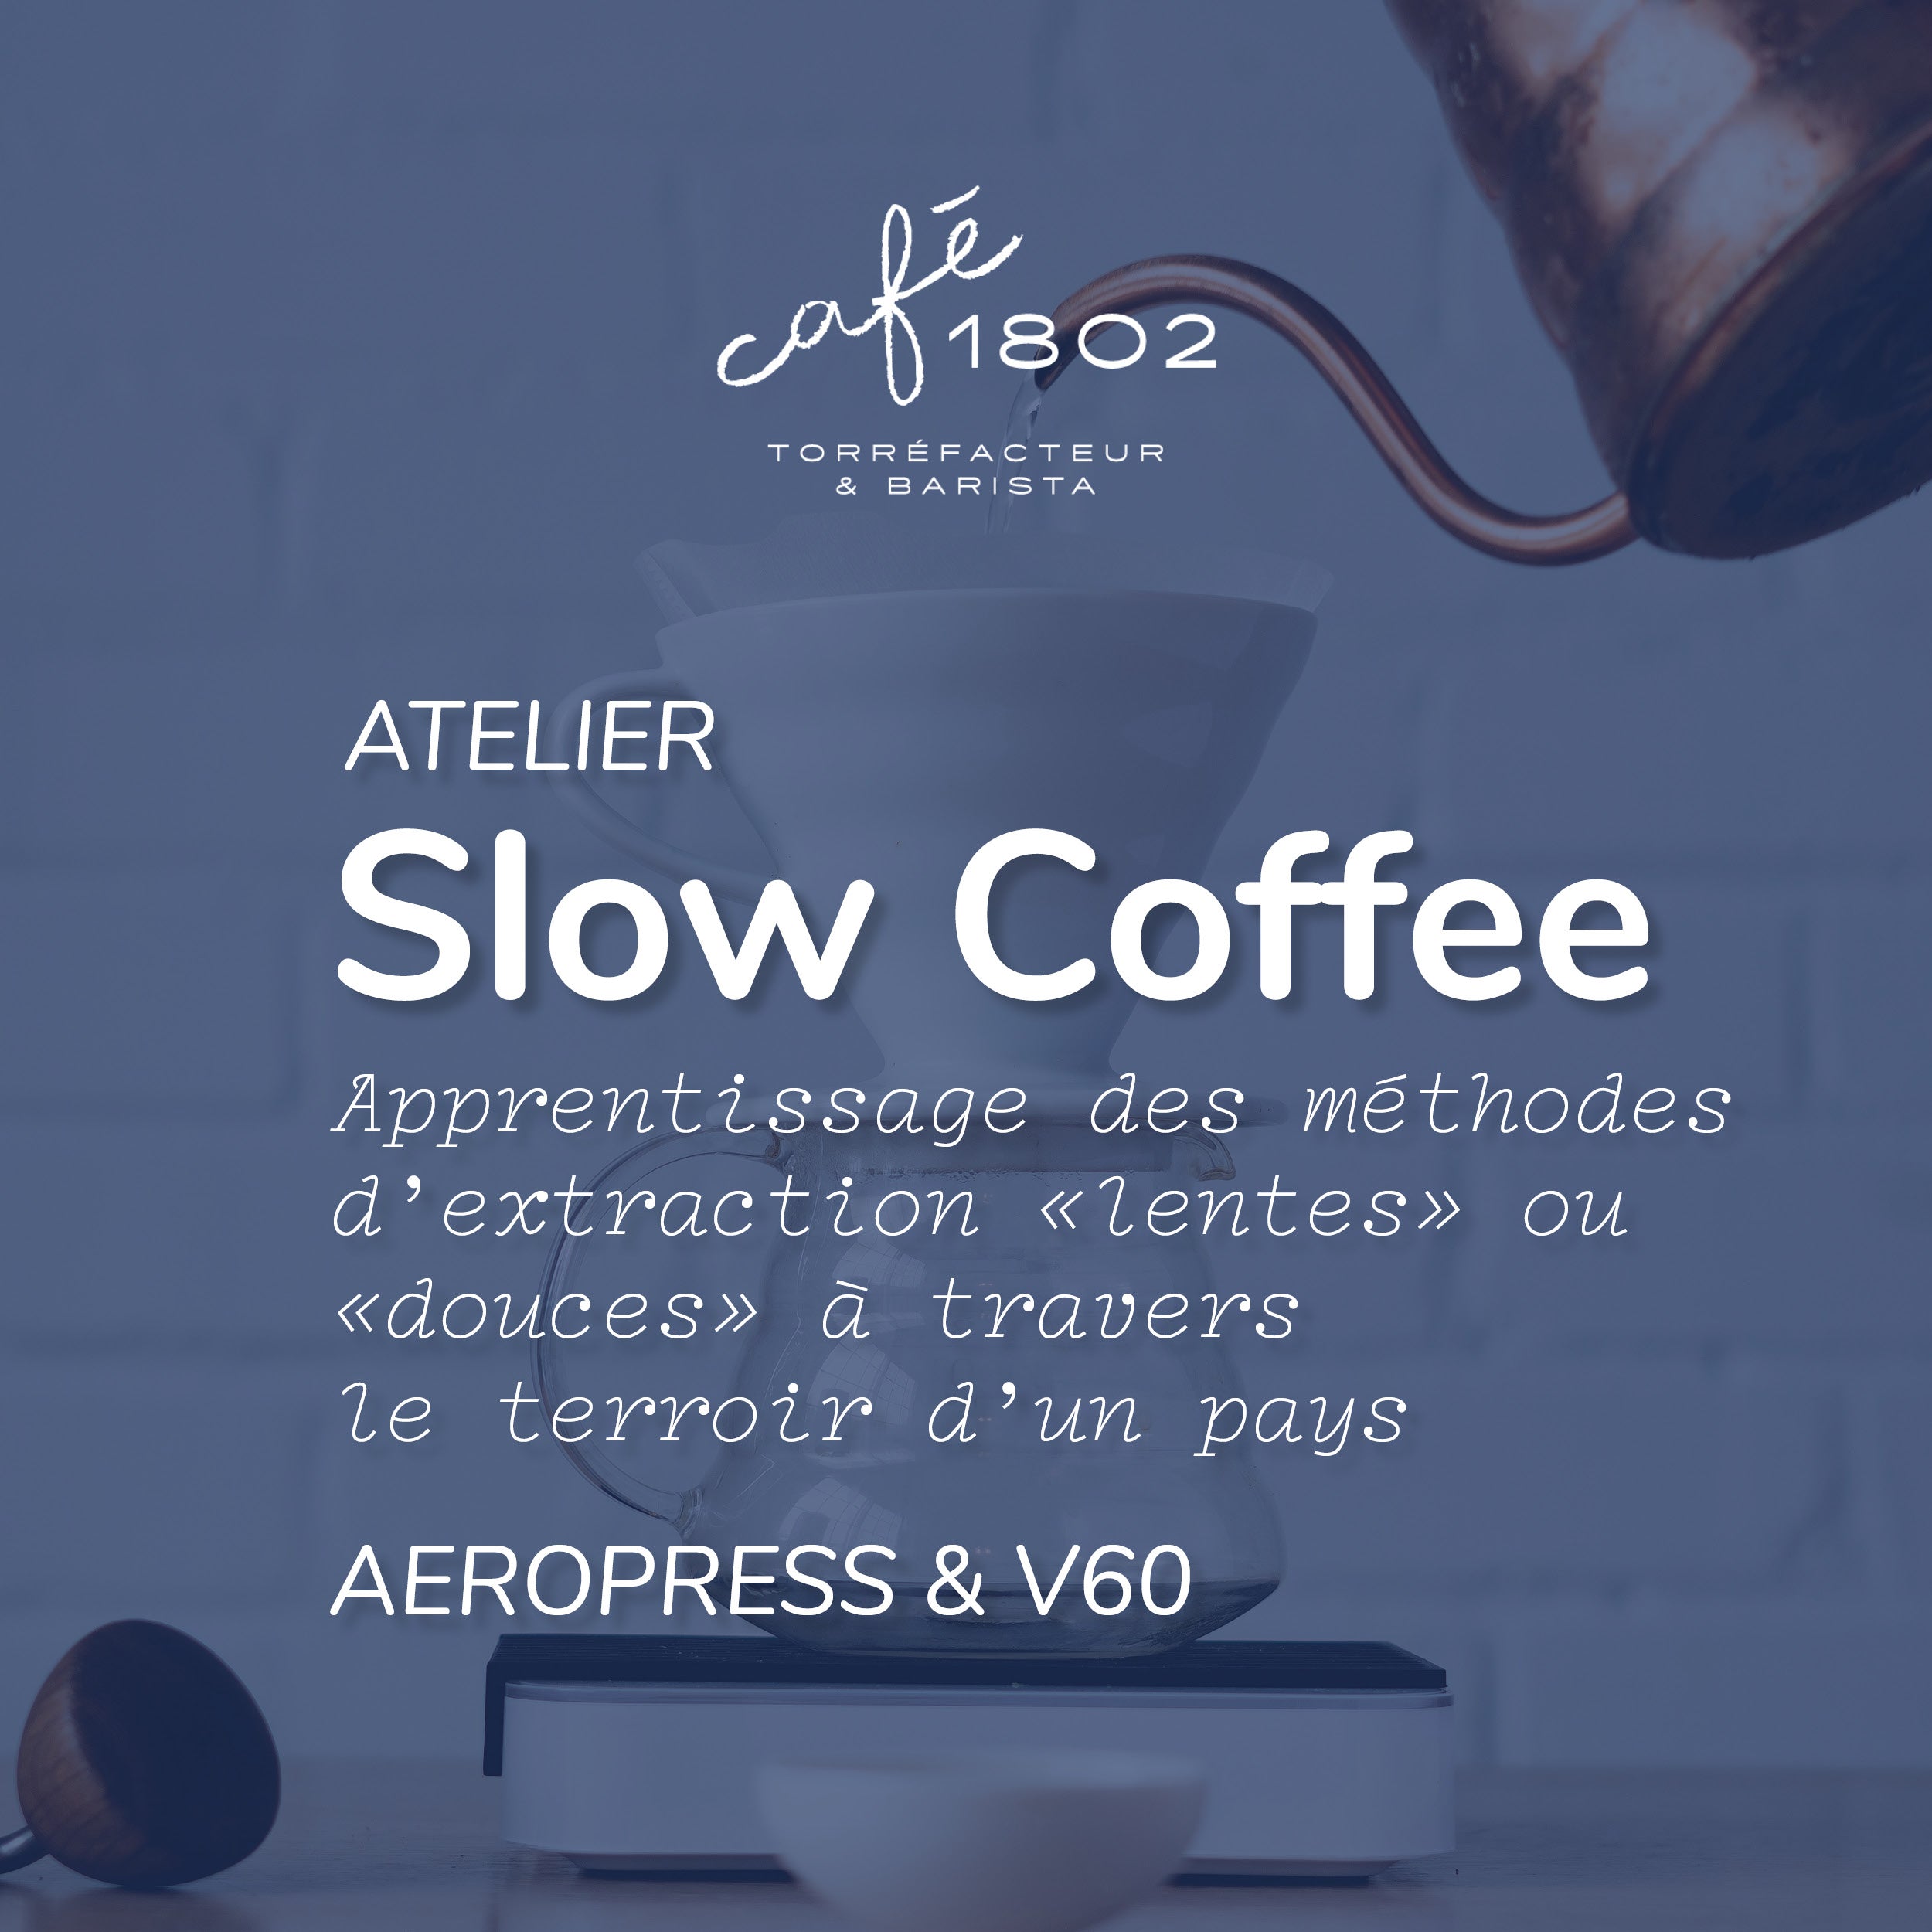 Dépliant pour atelier de formation autour du slow coffee du coffee shop café 1802